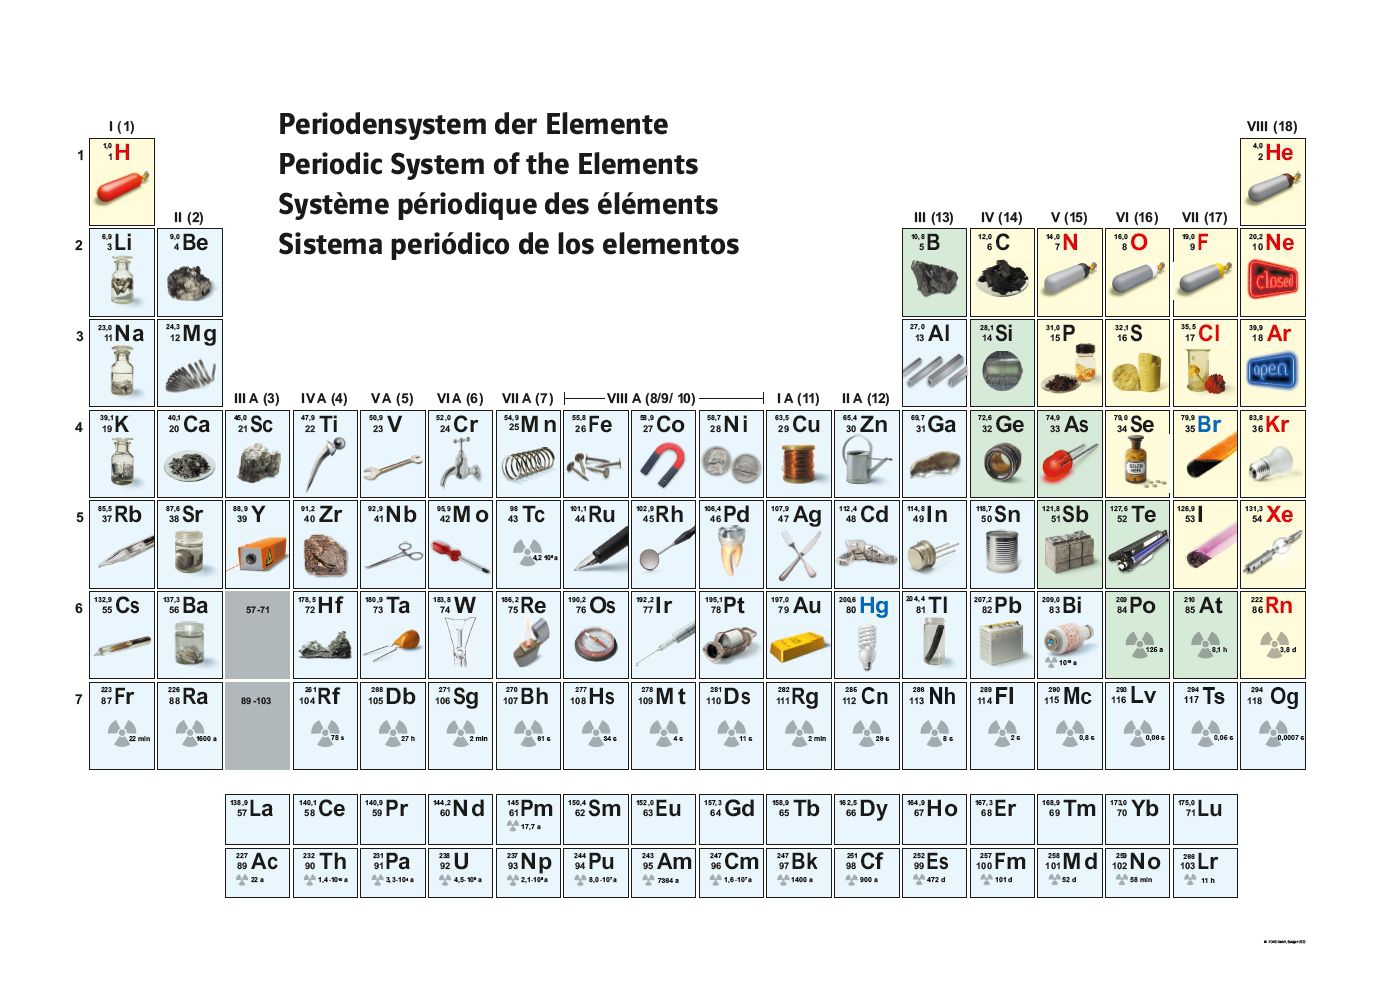 H elements